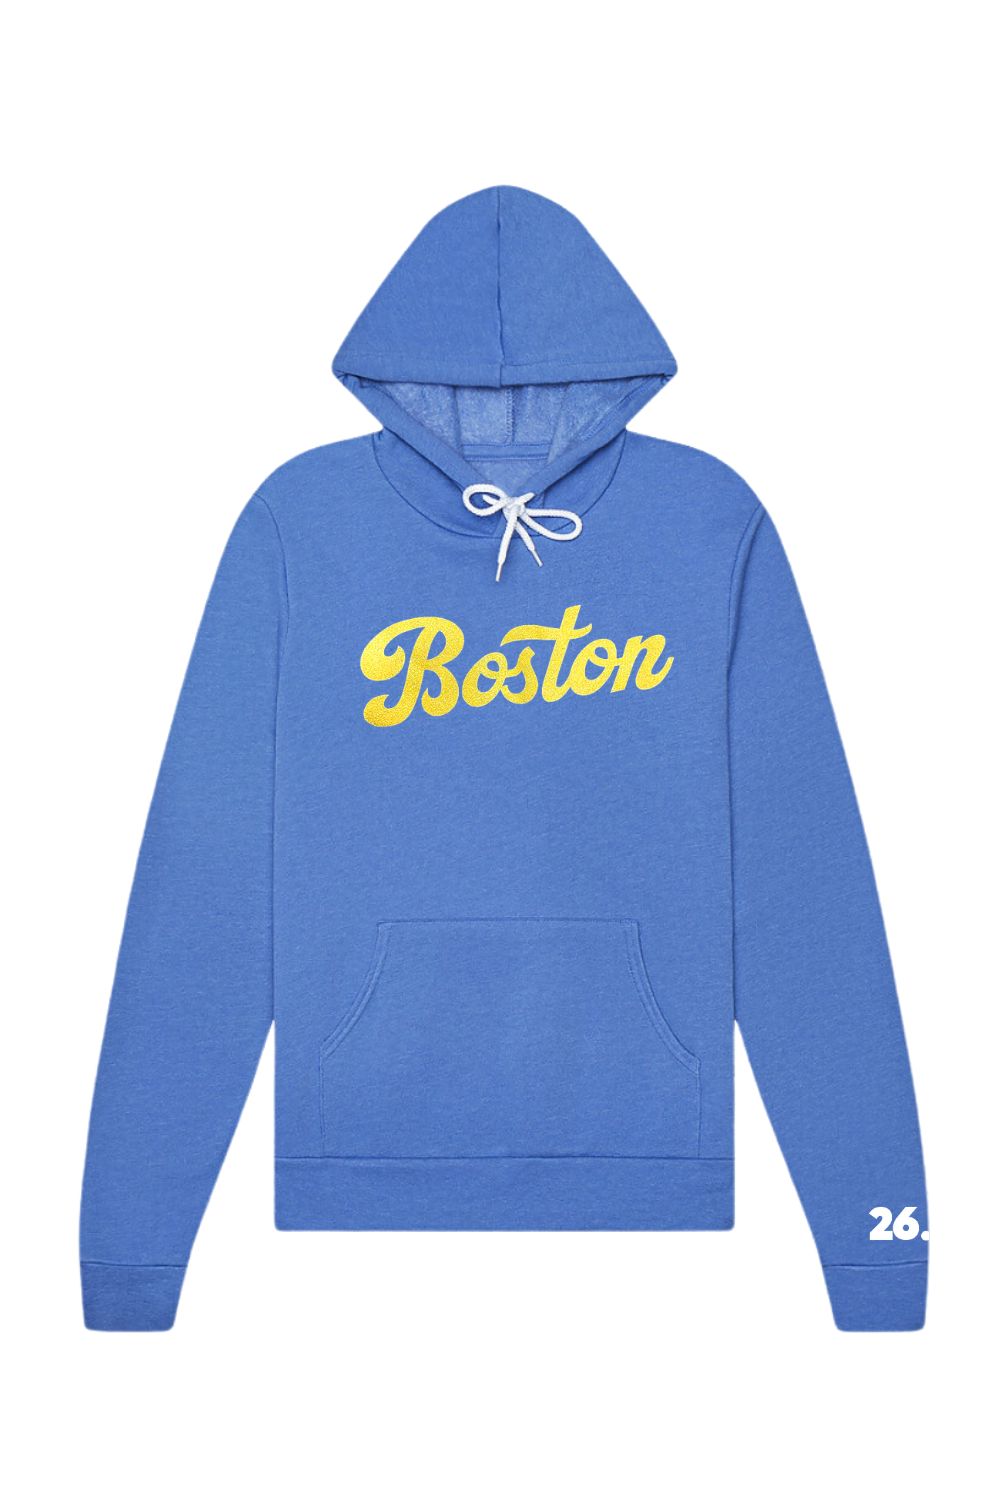 Boston Hooded Sweatshirt